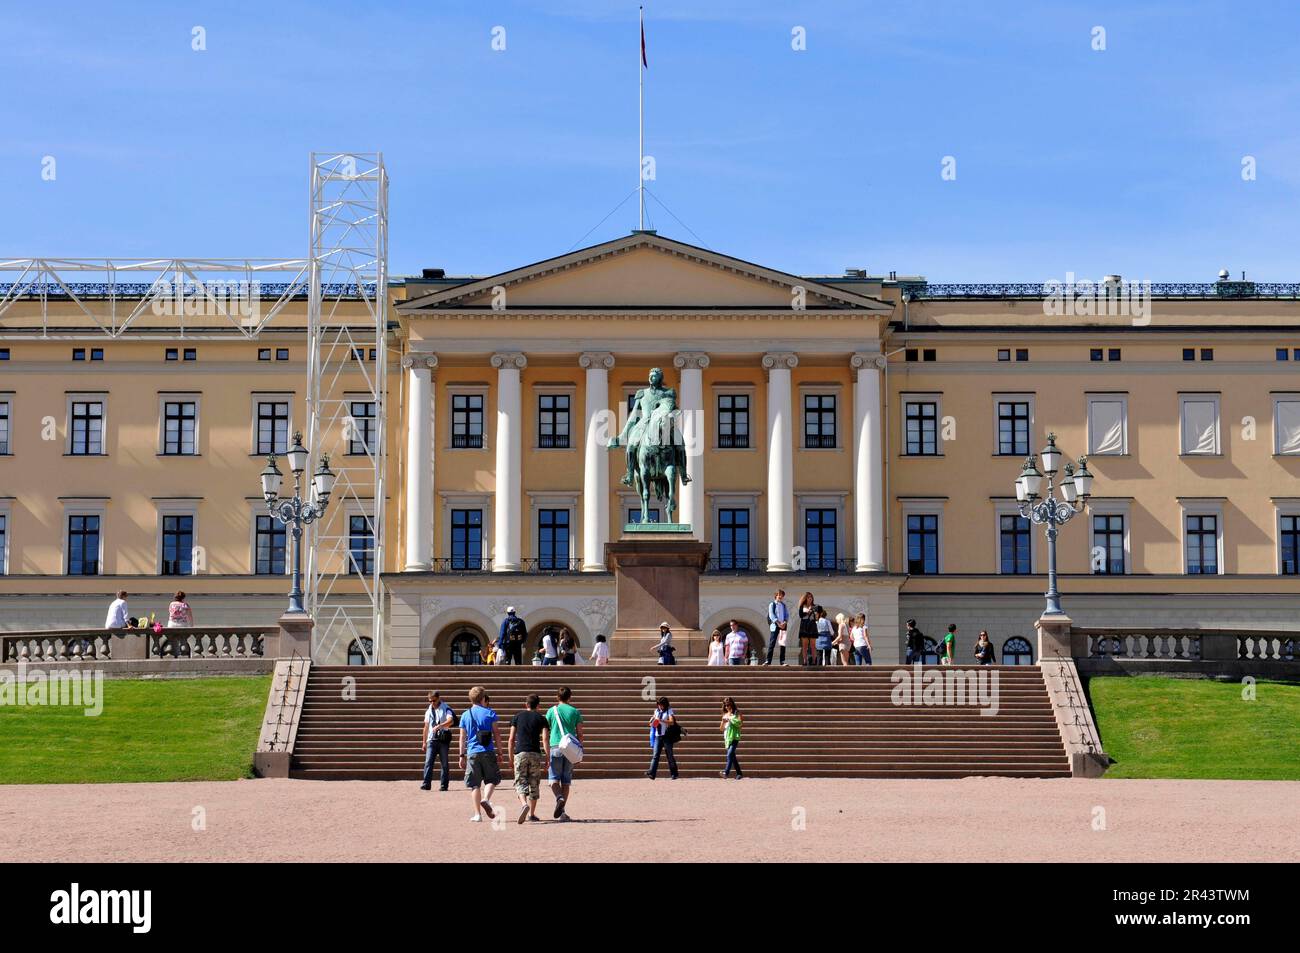 Statua equestre del re Carlo III Giovanni, Castello, Det kongelige slott, Castello della città reale, Oslo, Norvegia Foto Stock